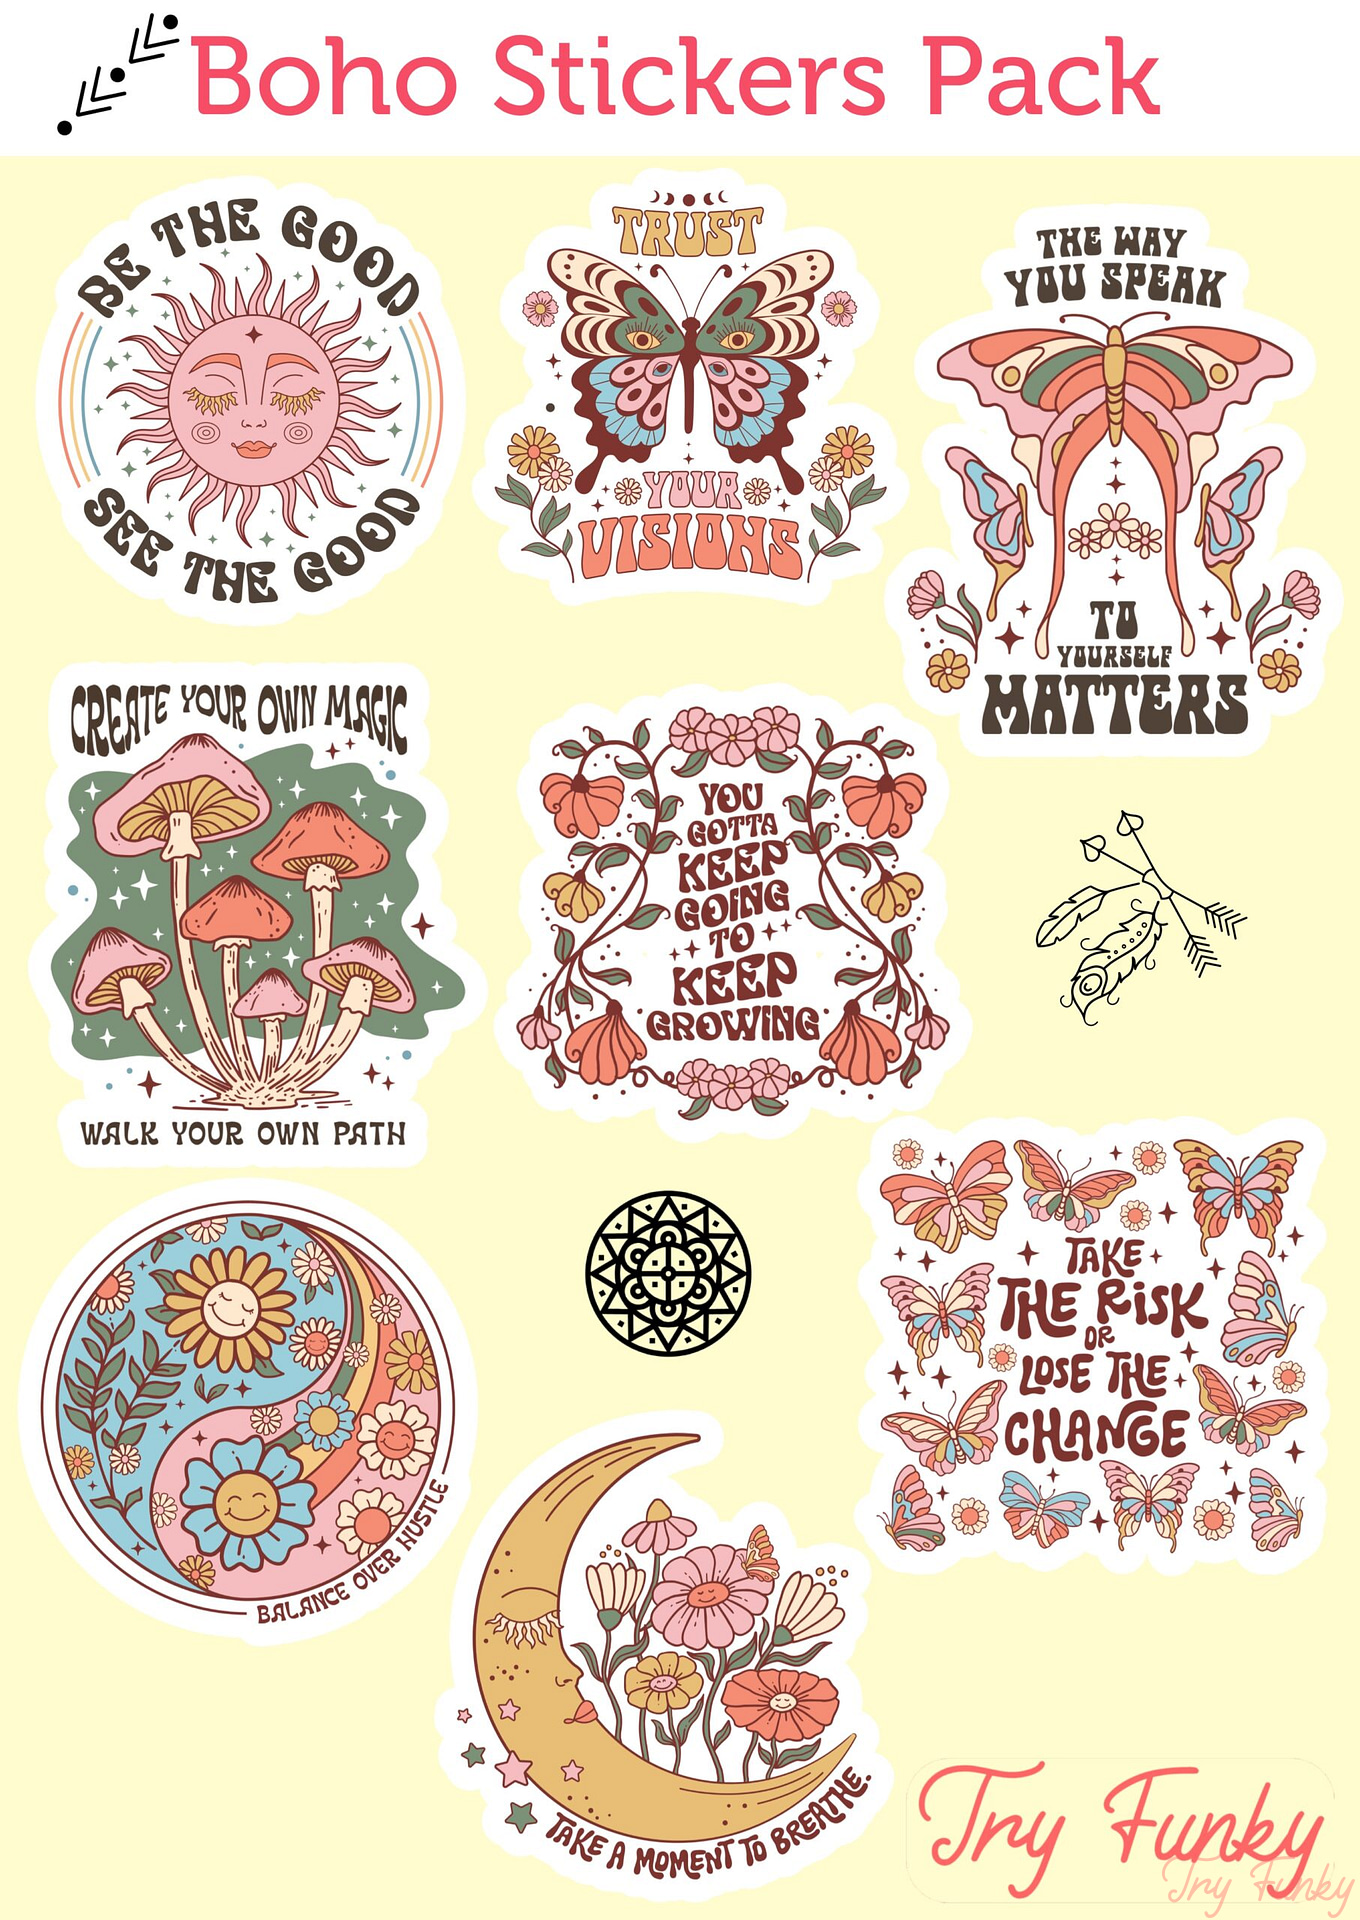 Bohemian Stickers, Boho Stickers, Boho Sticker Pack